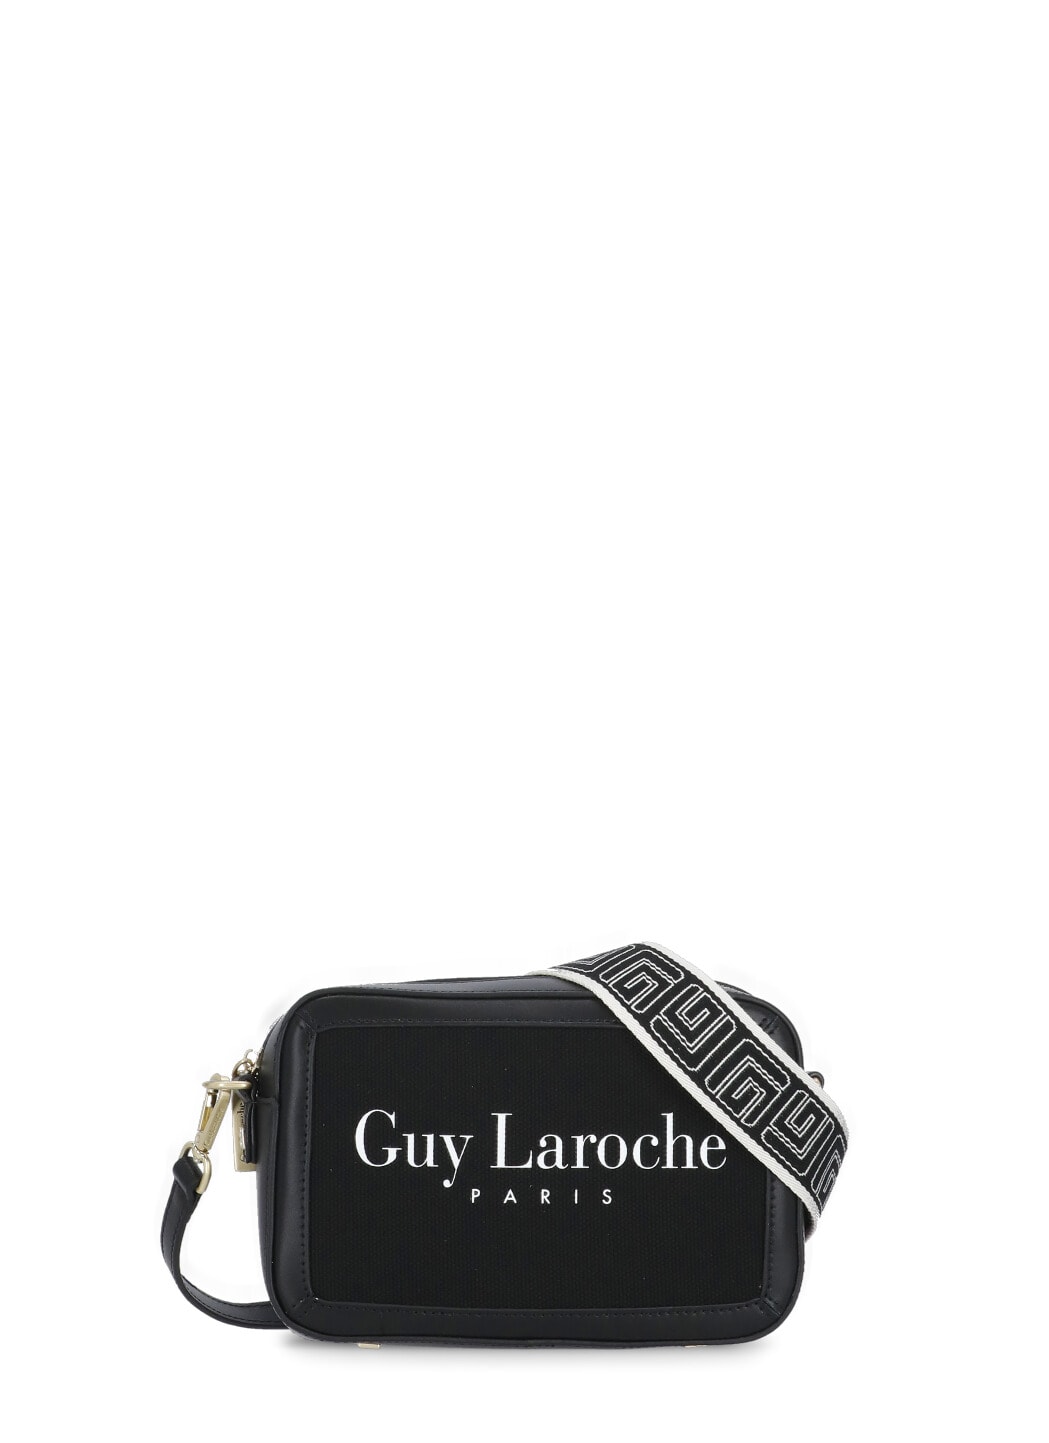 Guy Laroche Leather Shoulder Bag - Black Shoulder Bags, Handbags - GUY21011